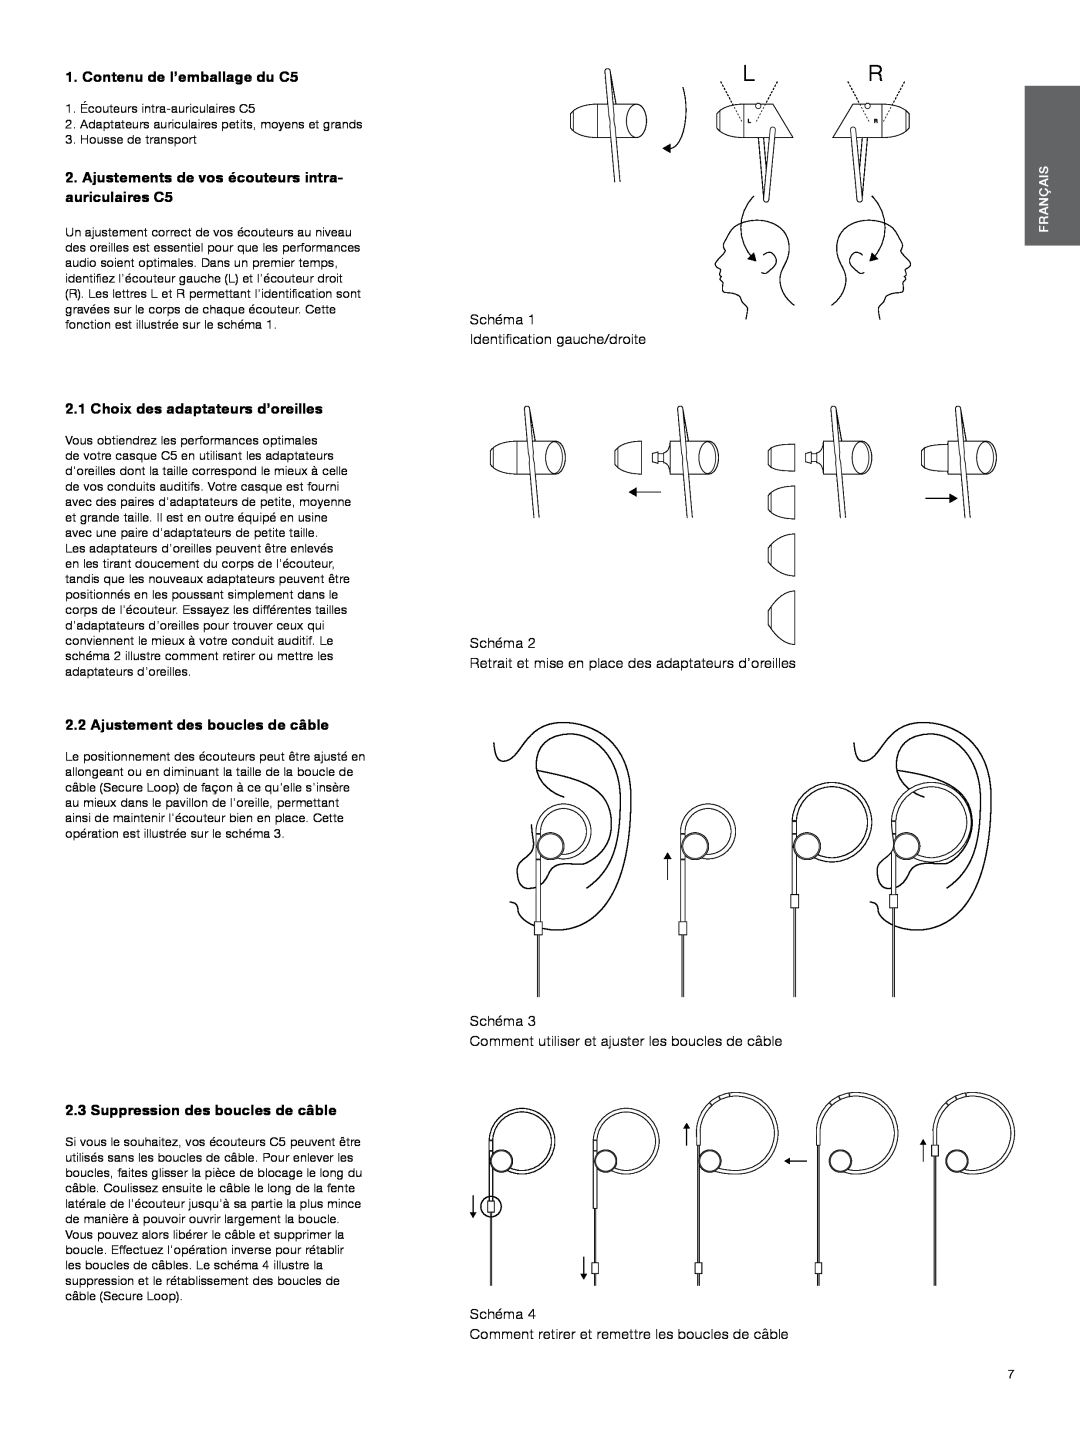 Bowers & Wilkins manual Contenu de l’emballage du C5, Choix des adaptateurs d’oreilles, Ajustement des boucles de câble 